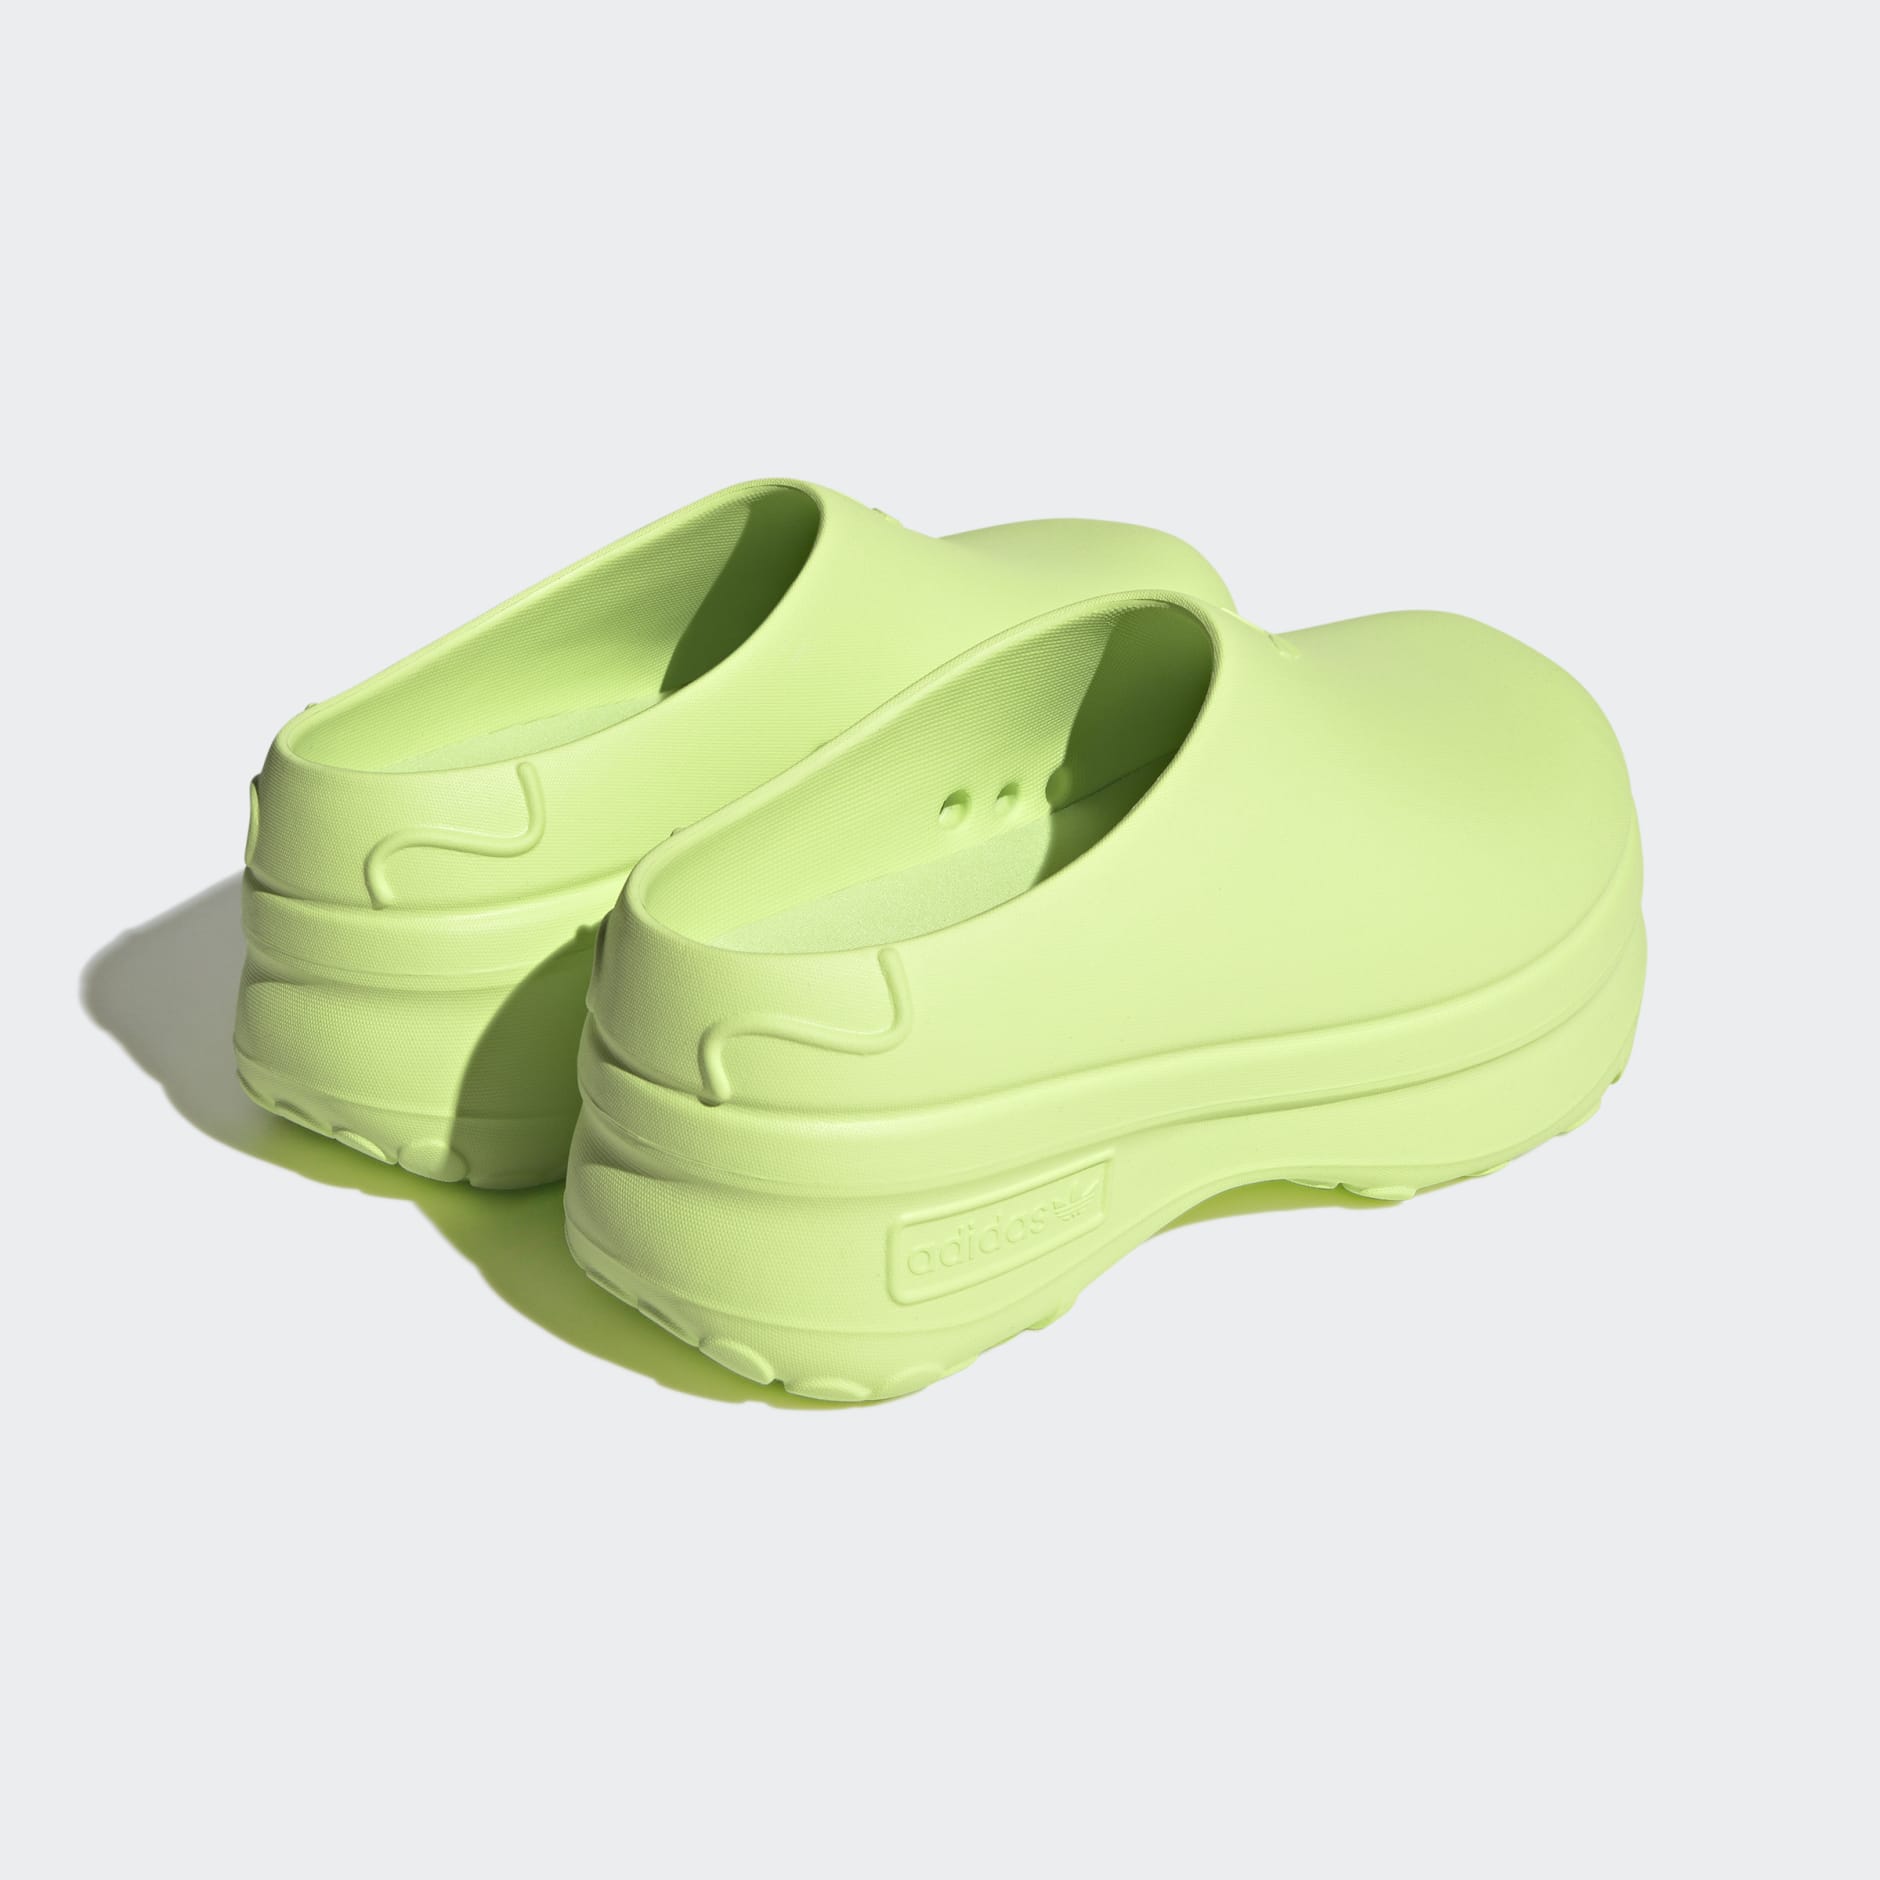 adidas Adifom Stan Smith Mule Shoes - Green | adidas LK